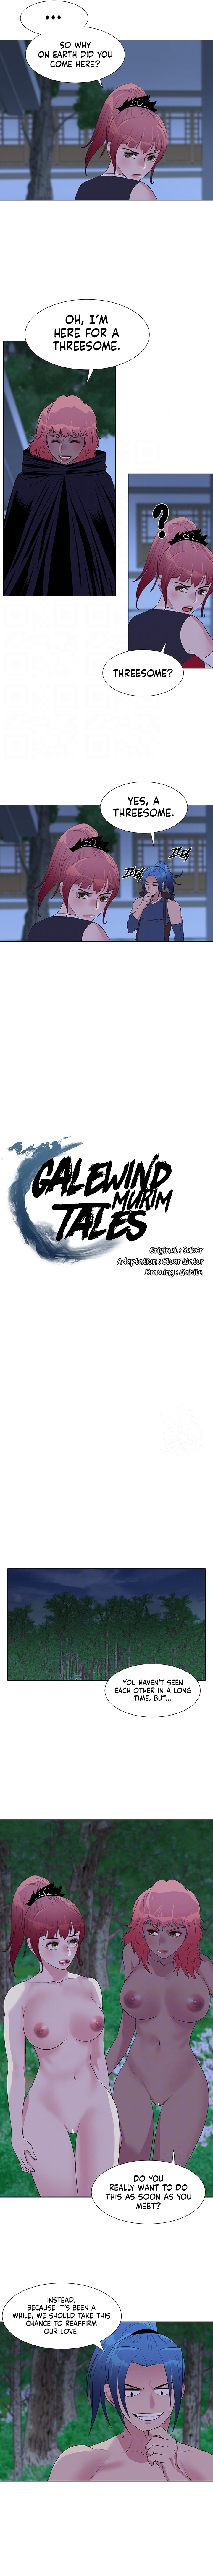 Galewind Murim Tales NEW image